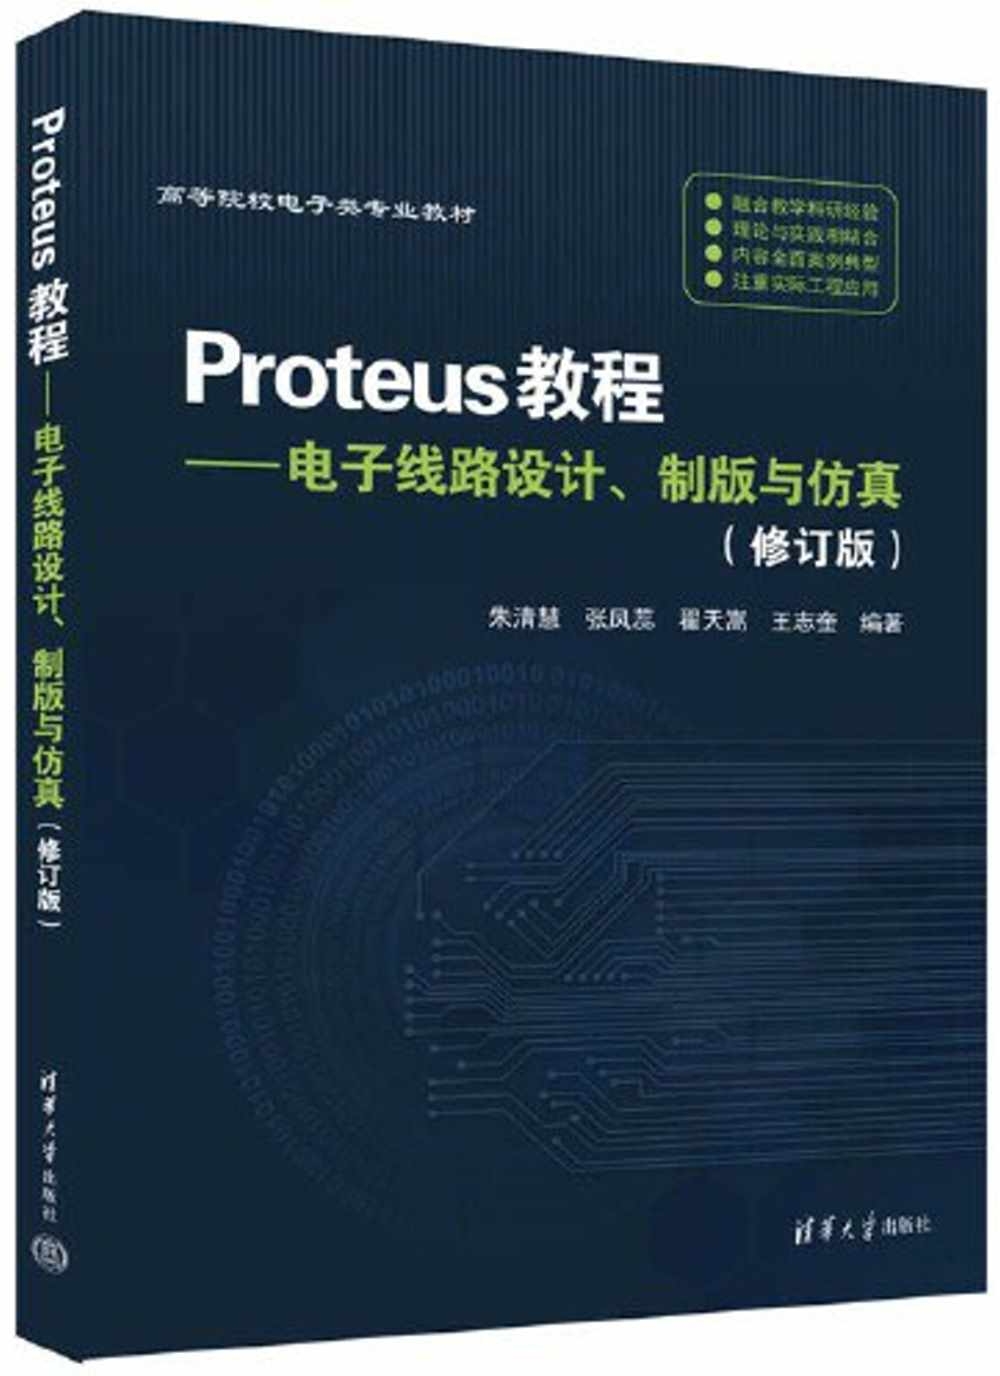 Proteus教程--電子線路設計、製版與仿真（修訂版）